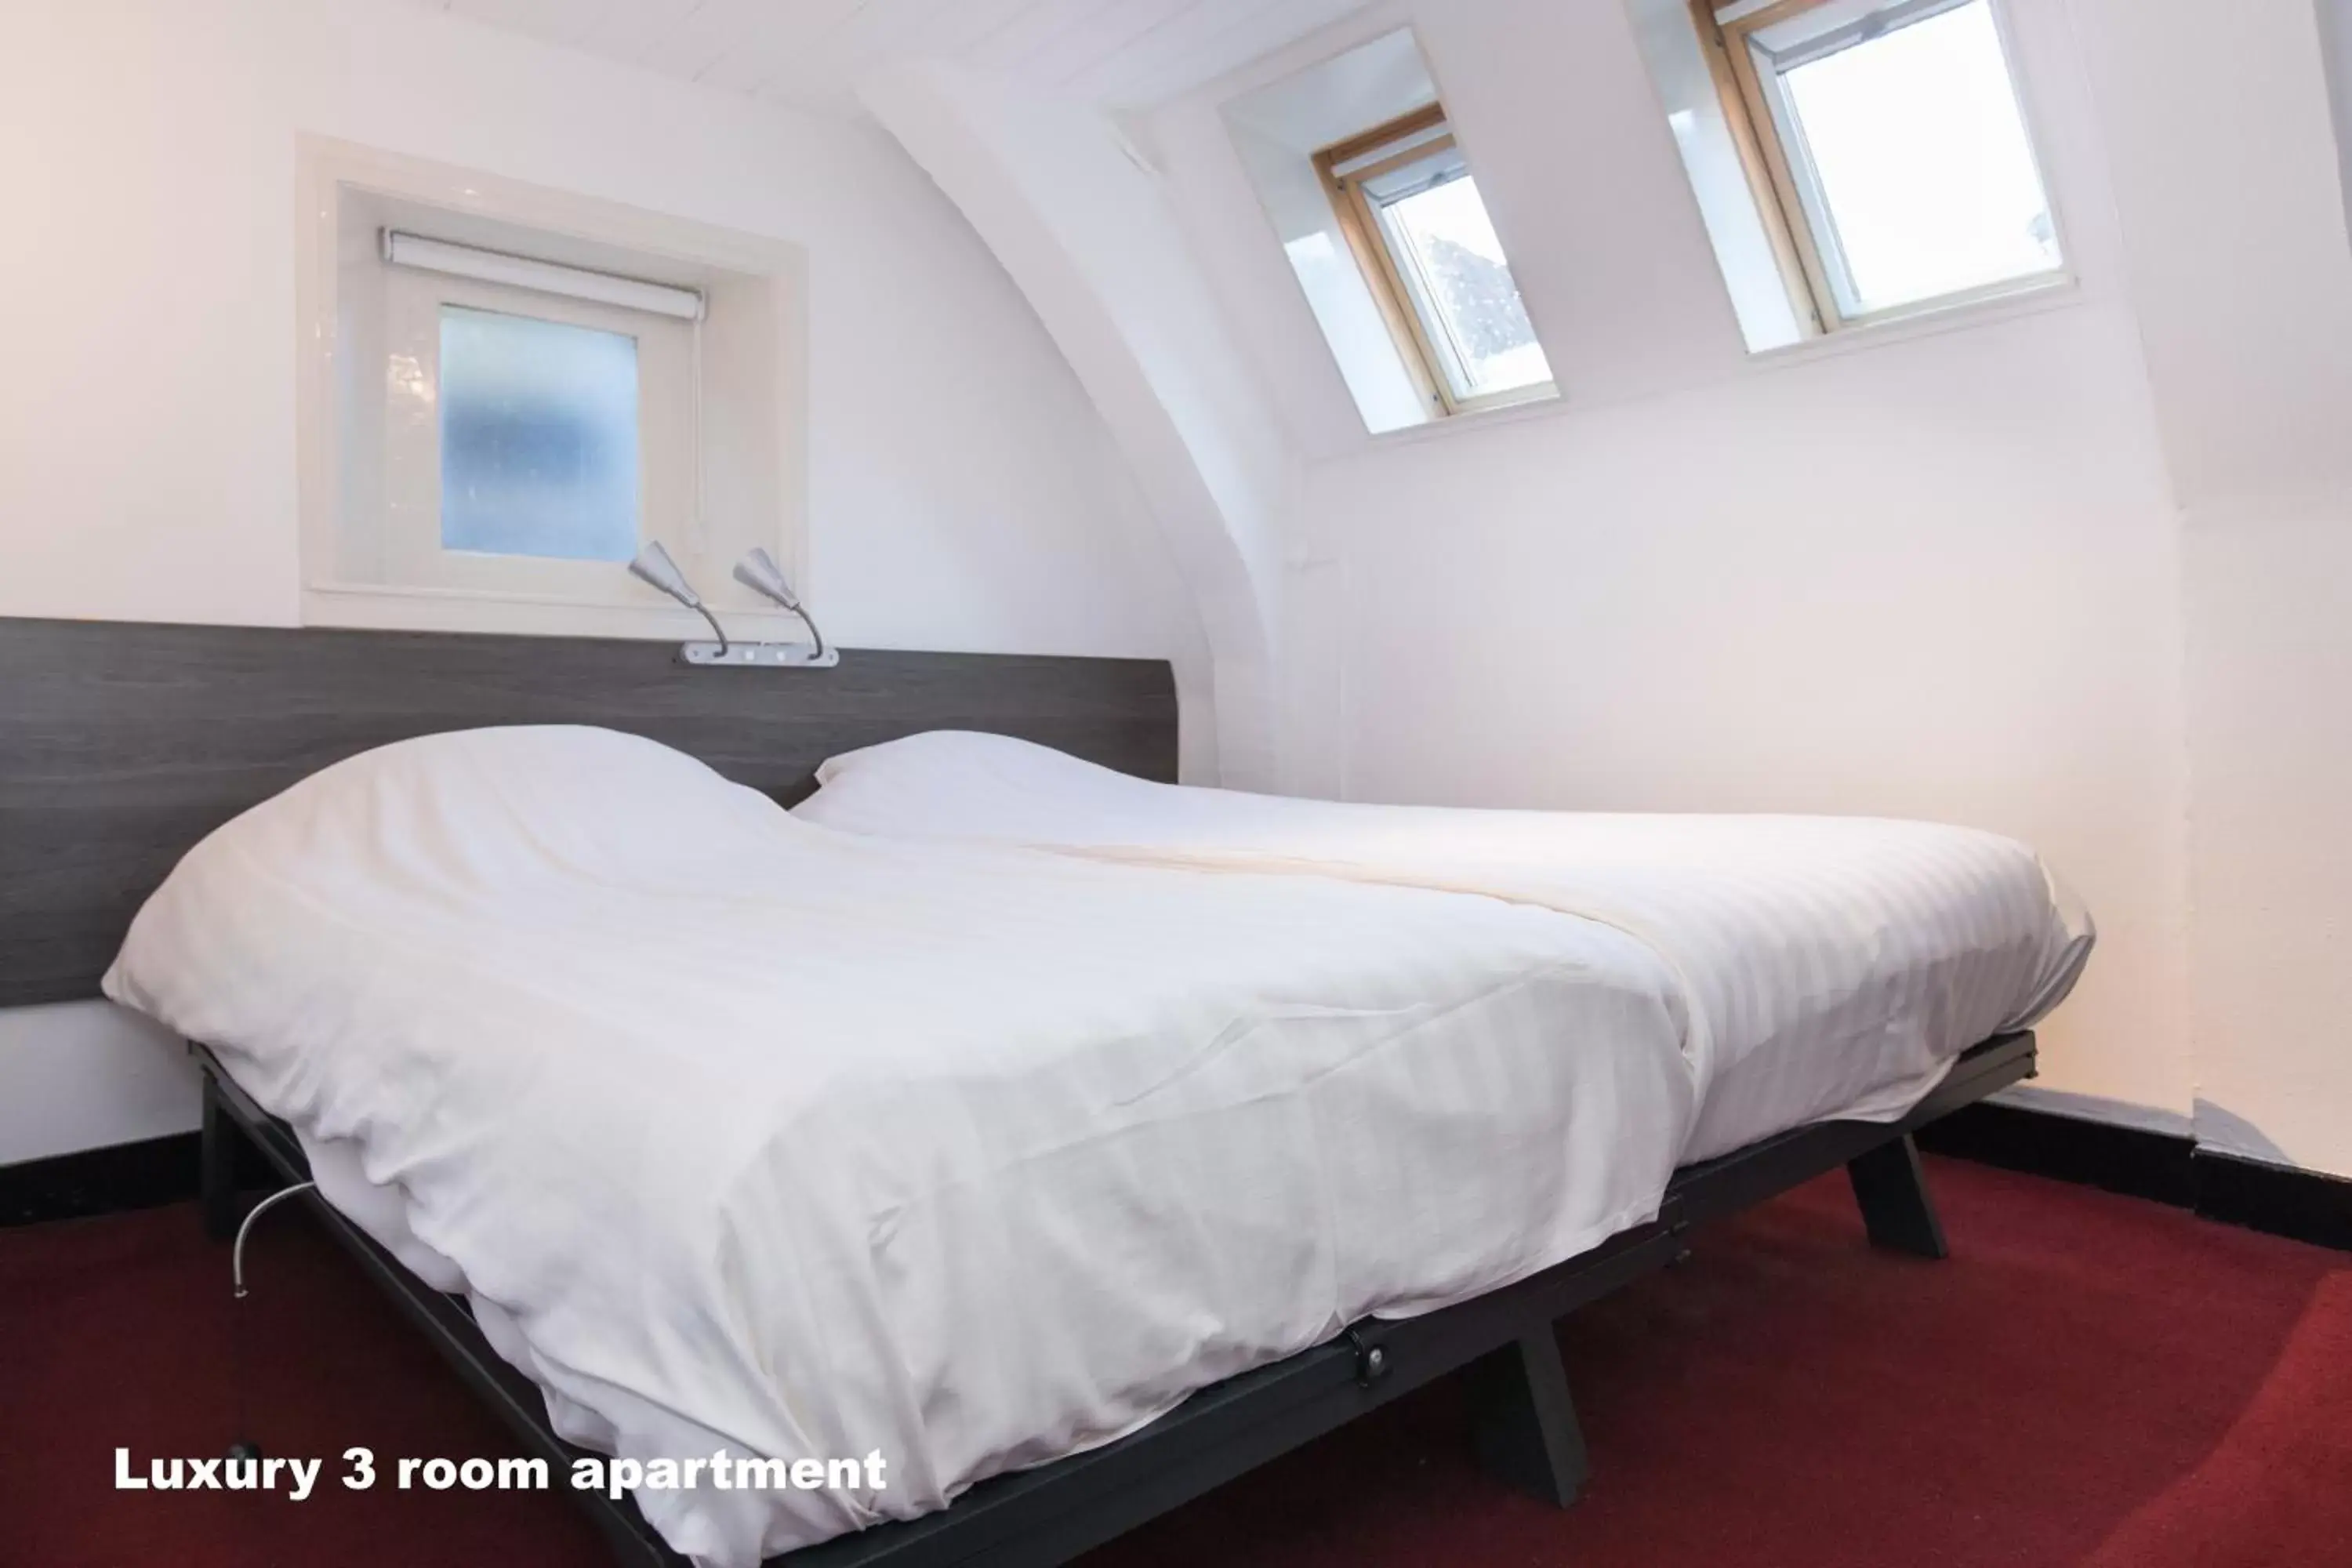 Bed in Hotel de Vischpoorte, hartje Deventer en aan de IJssel